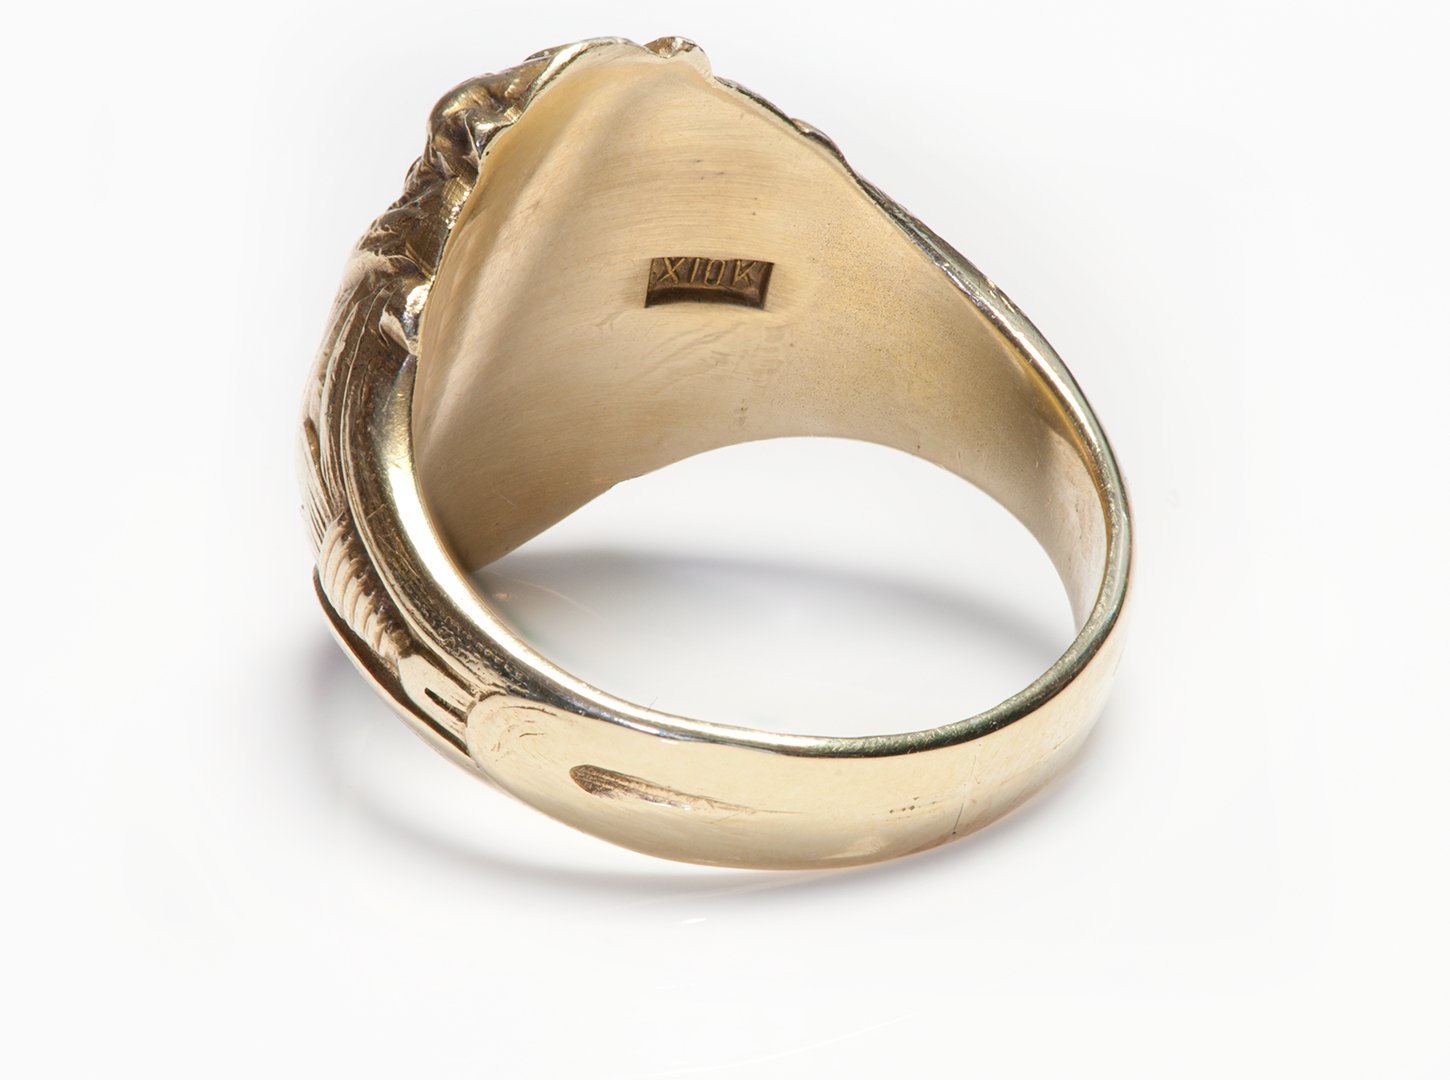 Antique 10K Gold Mythological Creature Men's Ring